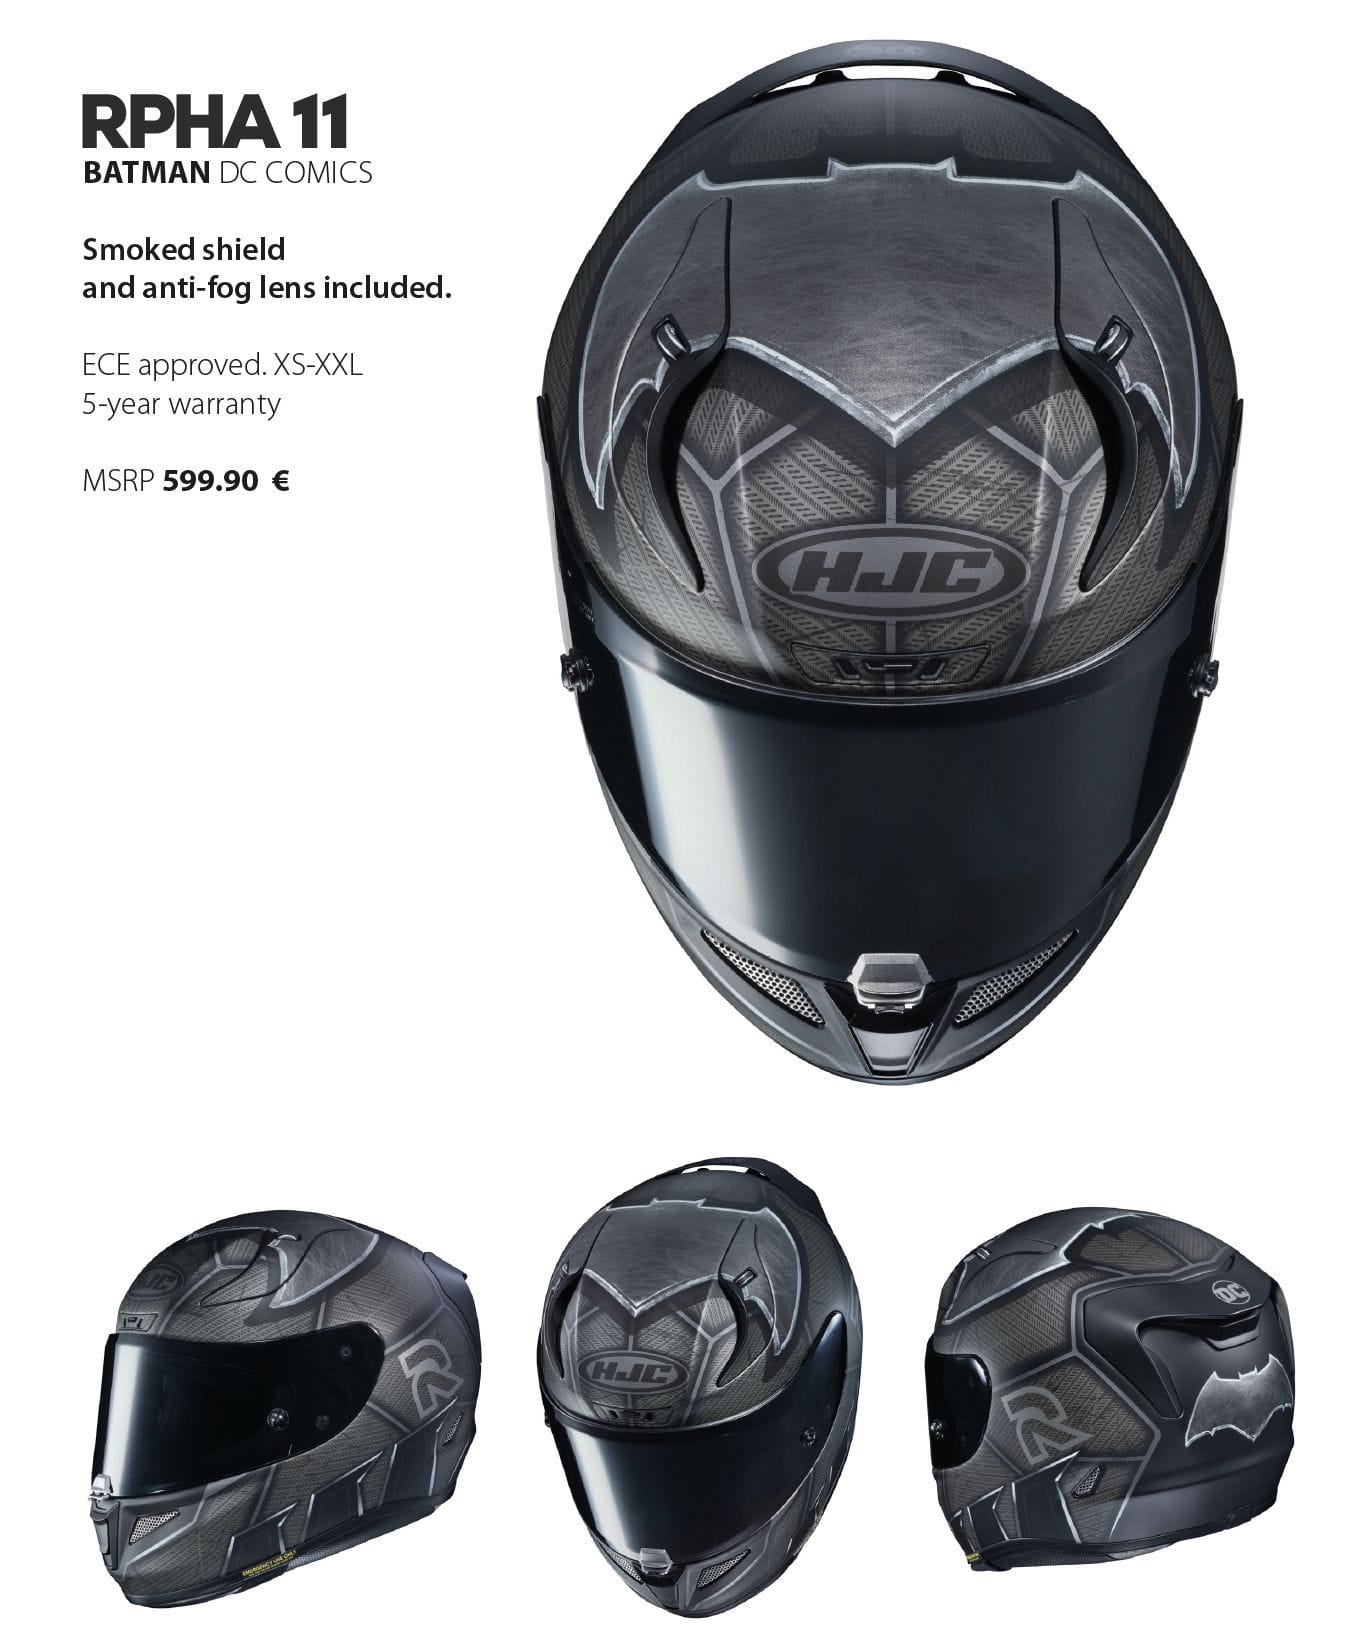 HJC jetzt auch mit DC-Helmen